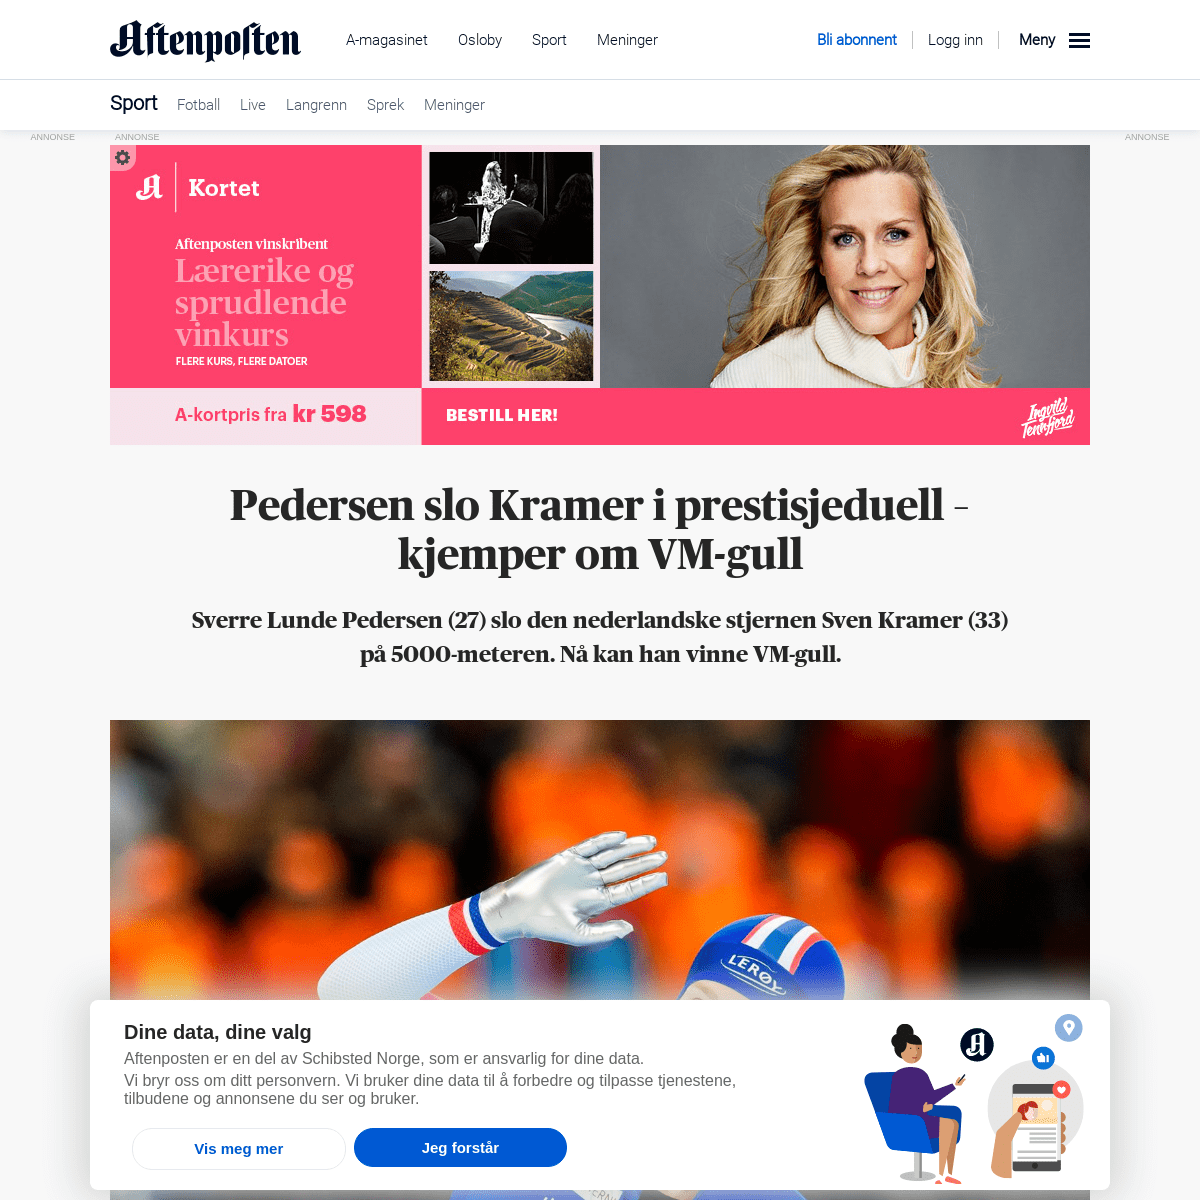 A complete backup of www.aftenposten.no/sport/i/K37Jd6/pedersen-slo-kramer-i-prestisjeduell-kjemper-om-vm-gull